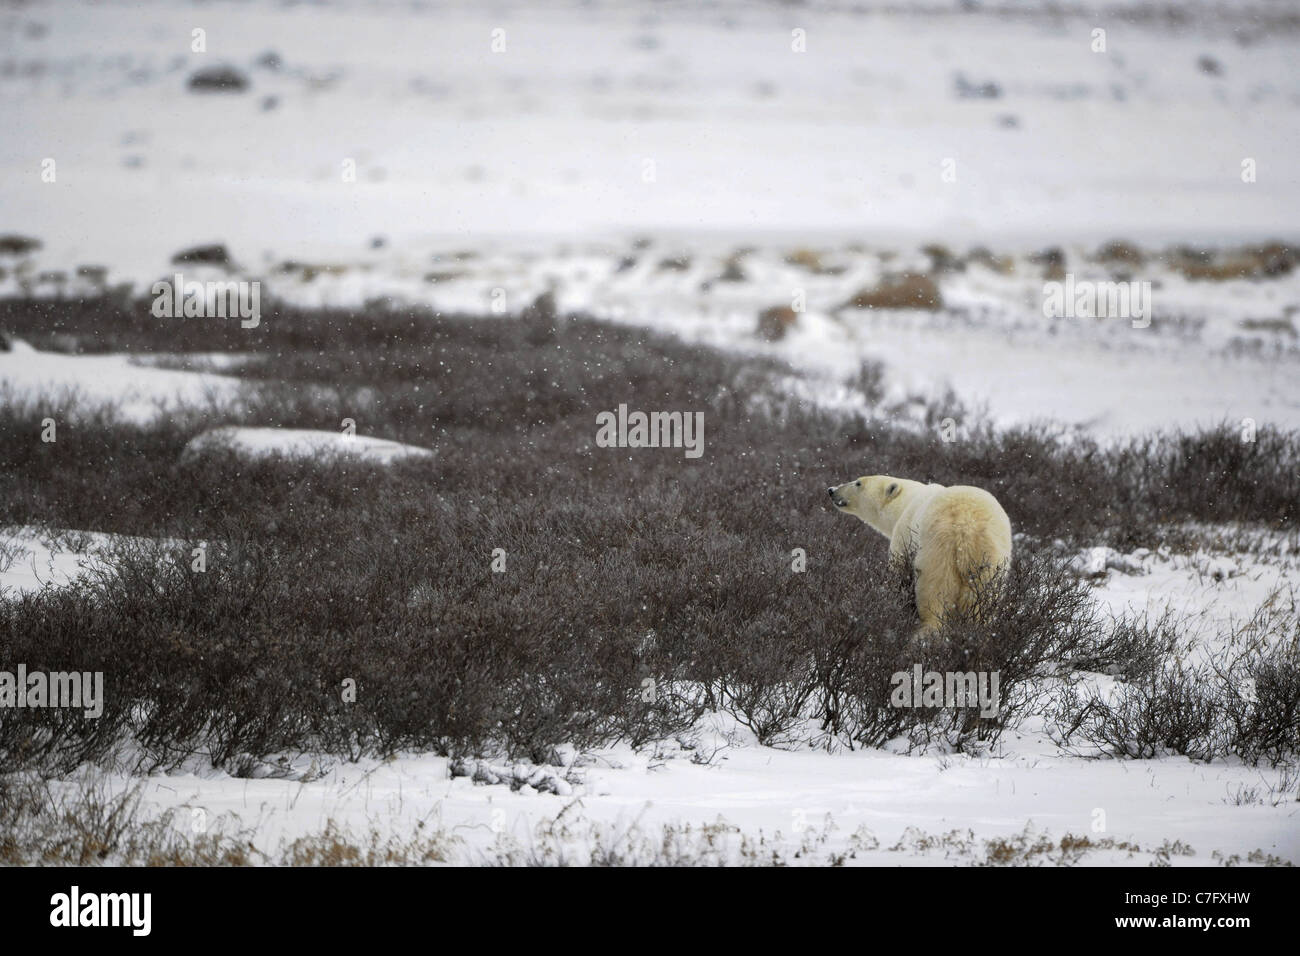 The polar bear sniffs. A portrait of the polar bear smelling air. Stock Photo